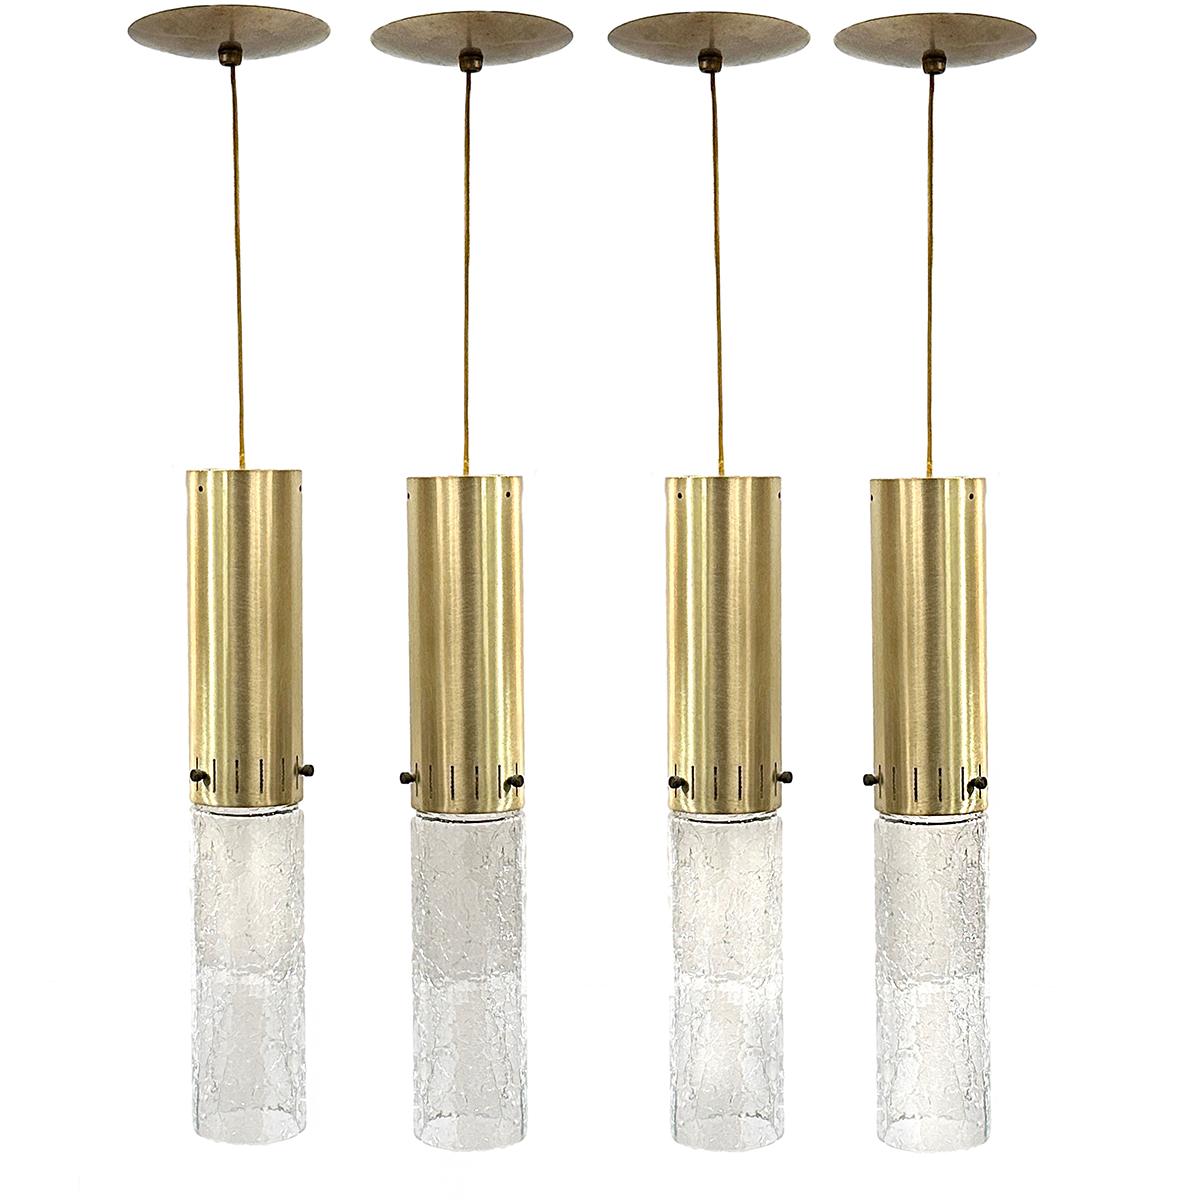 Ensemble de 4 luminaires italiens en verre craquelé datant des années 1960.

Mesures :
Chute : 33